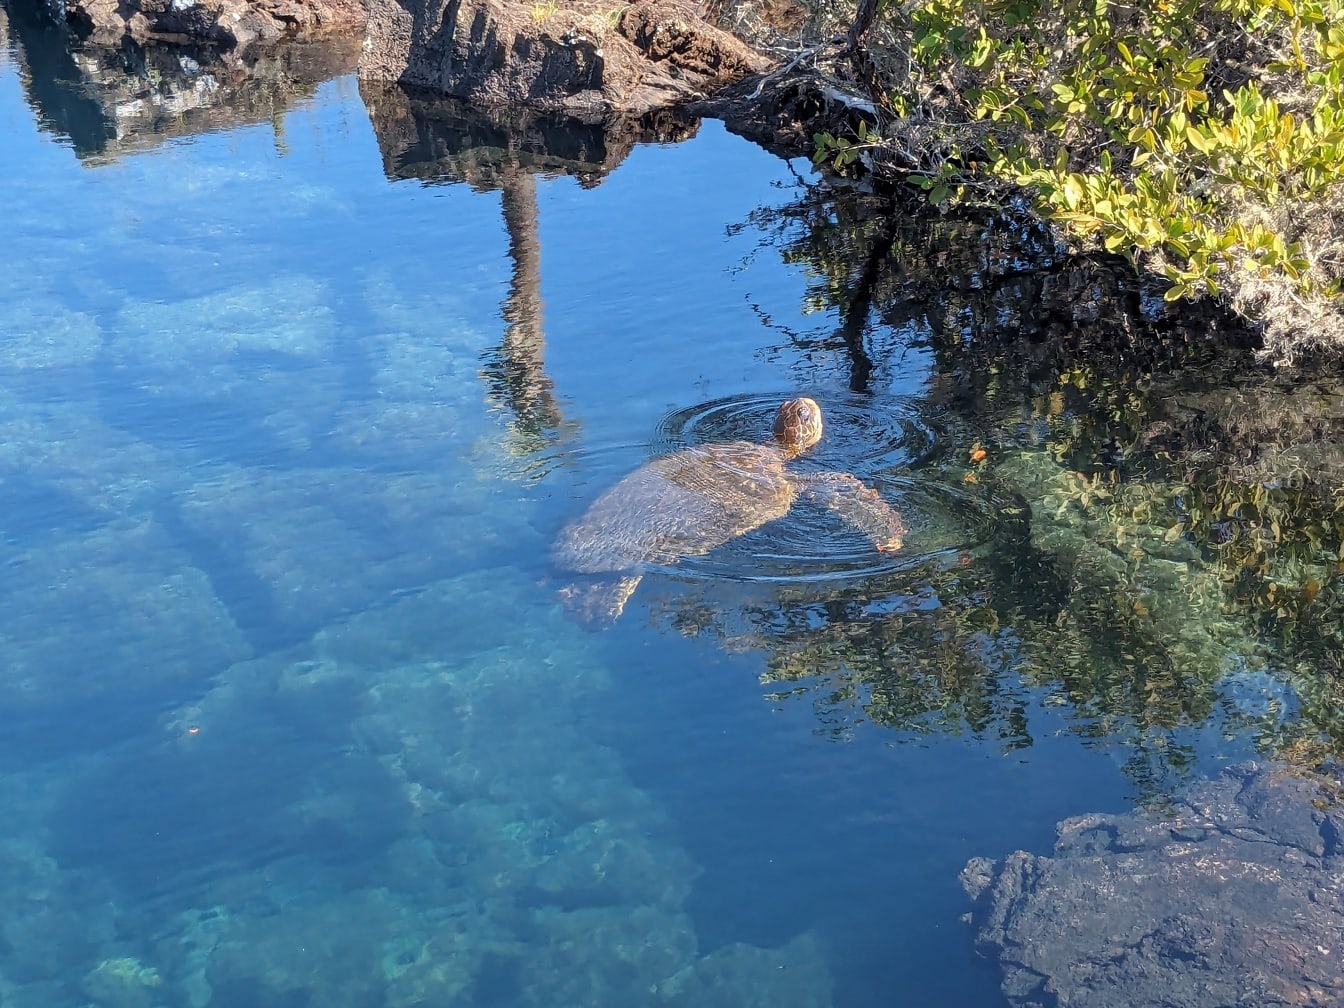 Galapágska zelená morská korytnačka (Chelonia mydas agassizii) korytnačka plávajúca v plytkej vode pri pobreží